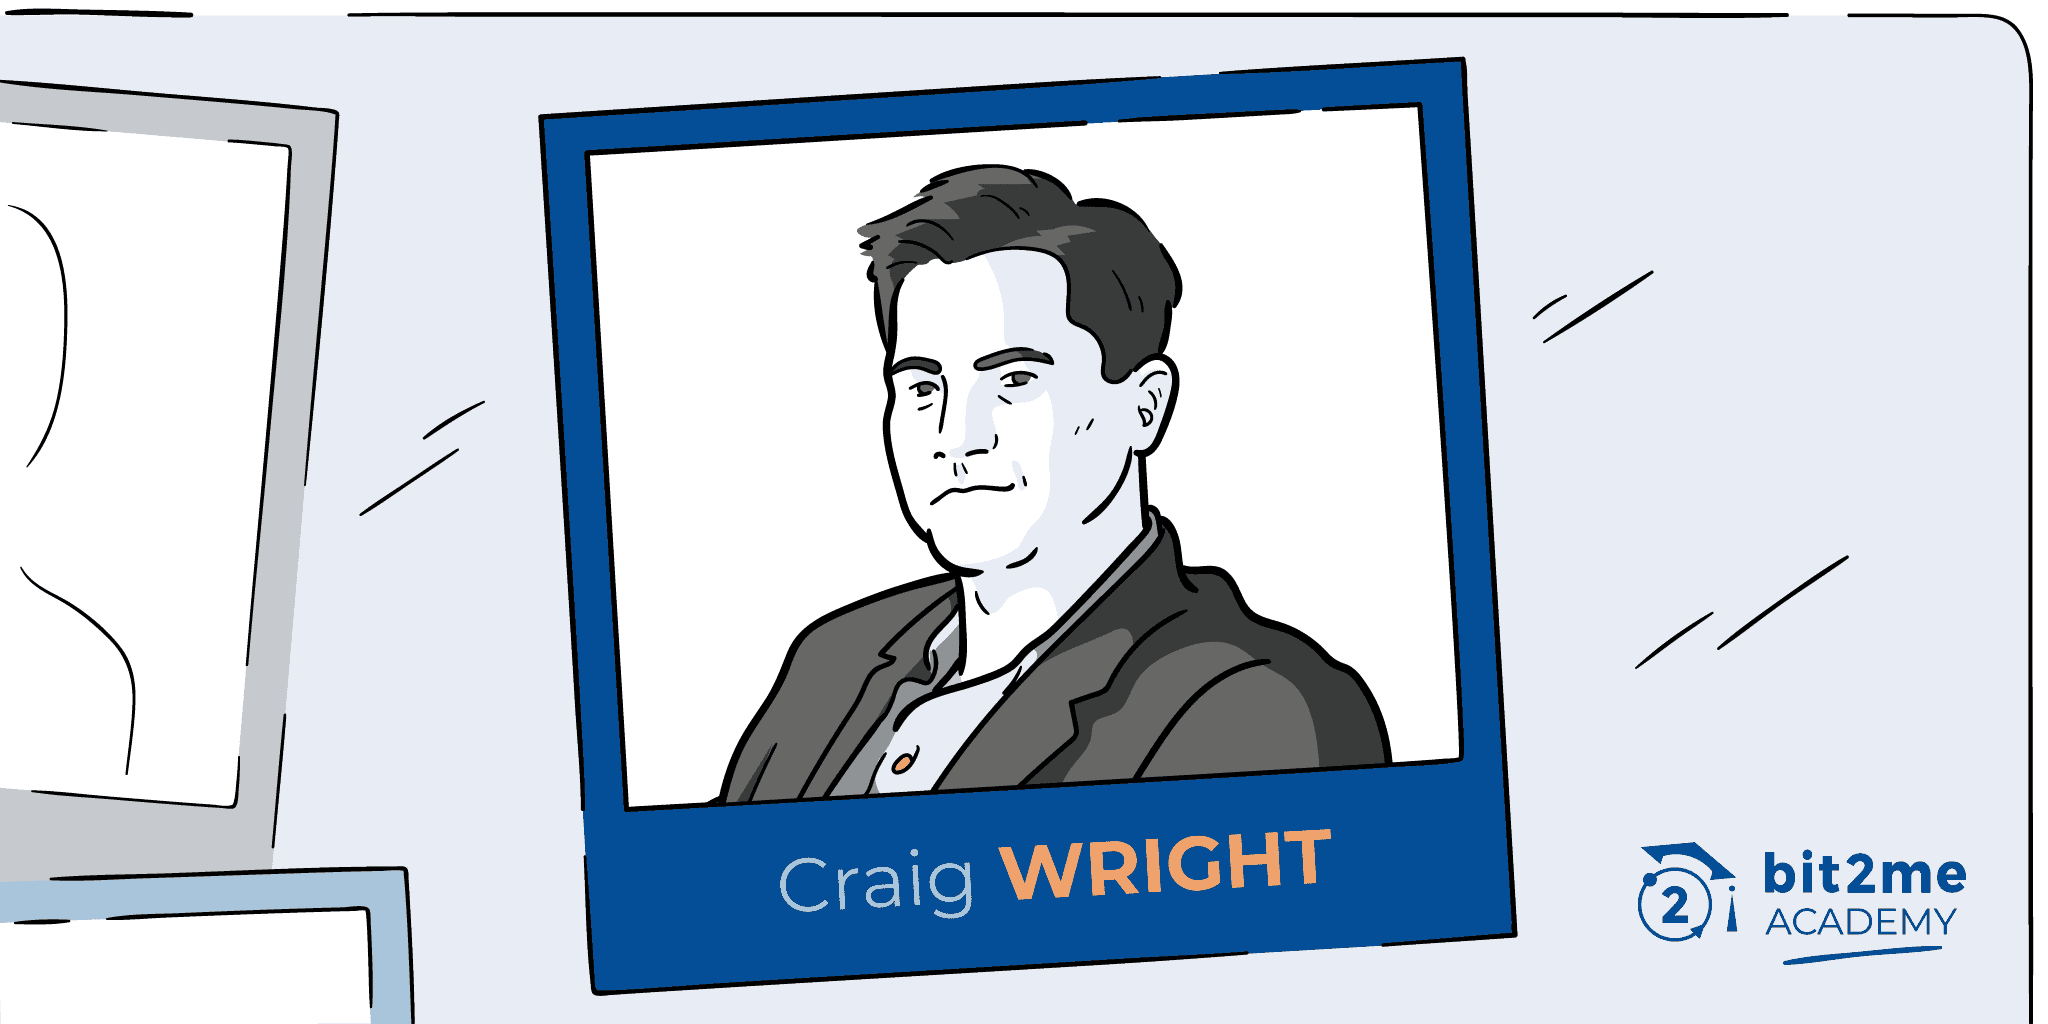 ¿Quién es Craig Wright?